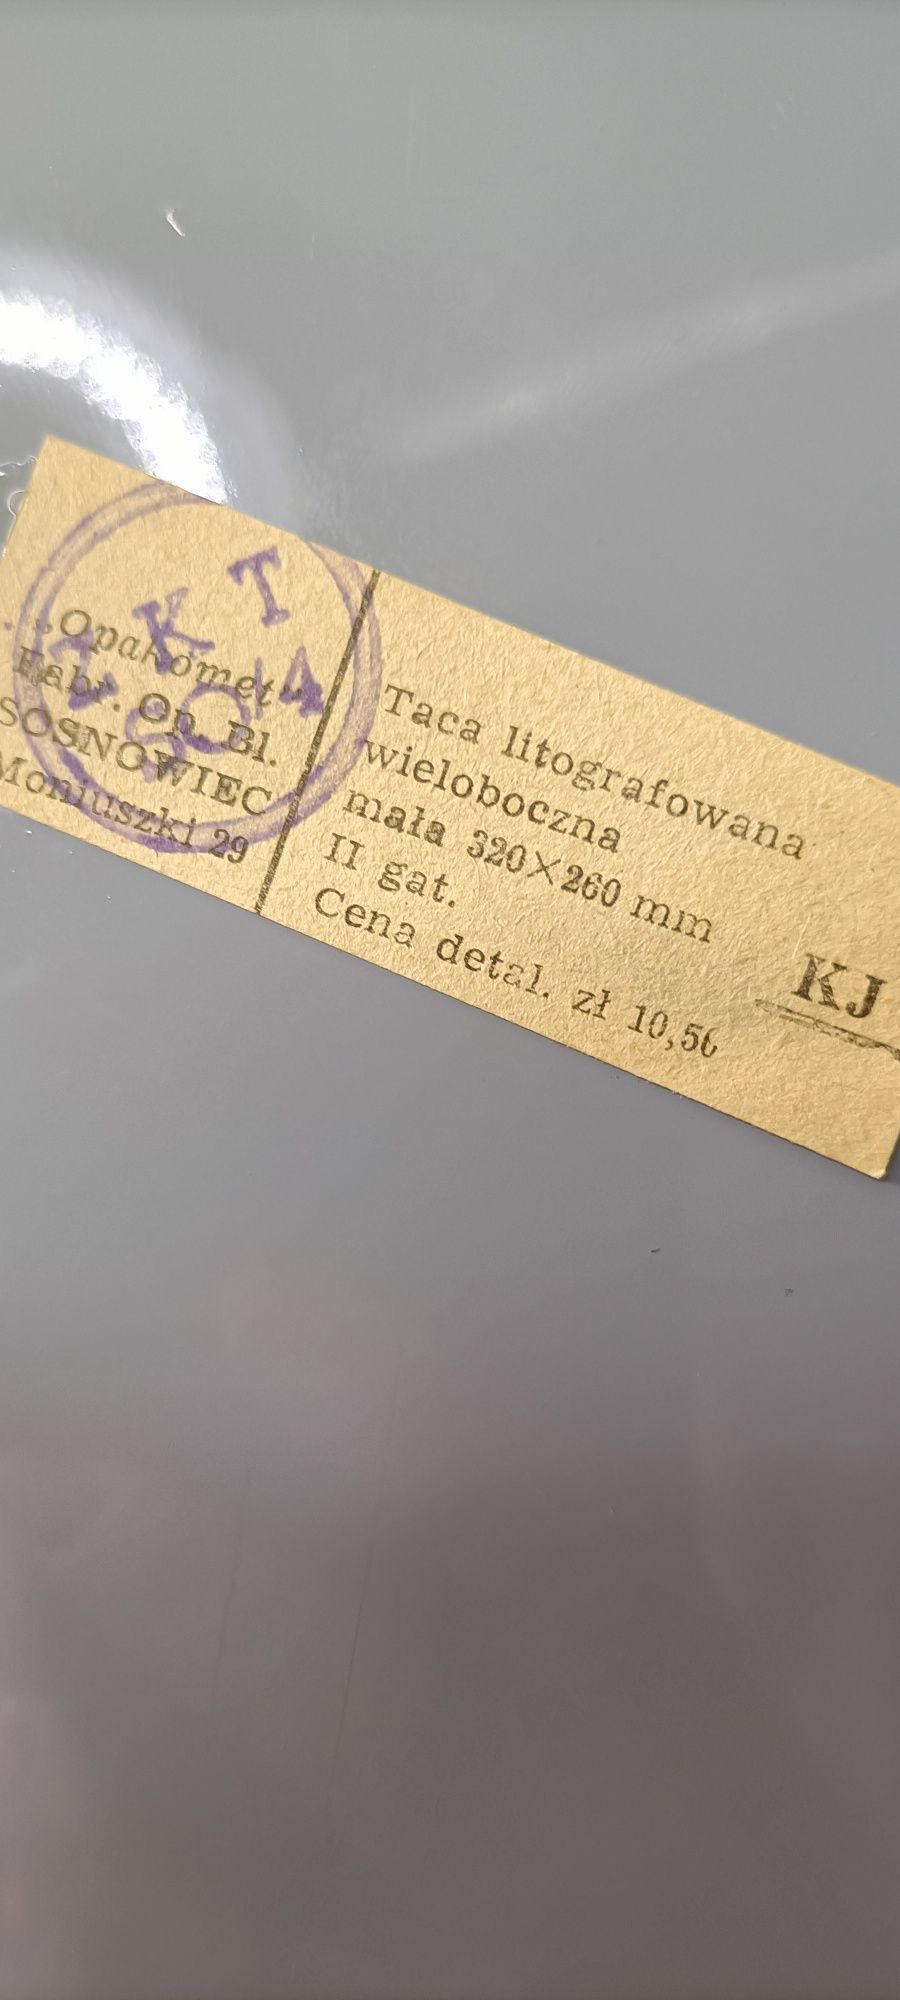 Nieużywana taca litografowana z czasów PRL z metką design PRL T17